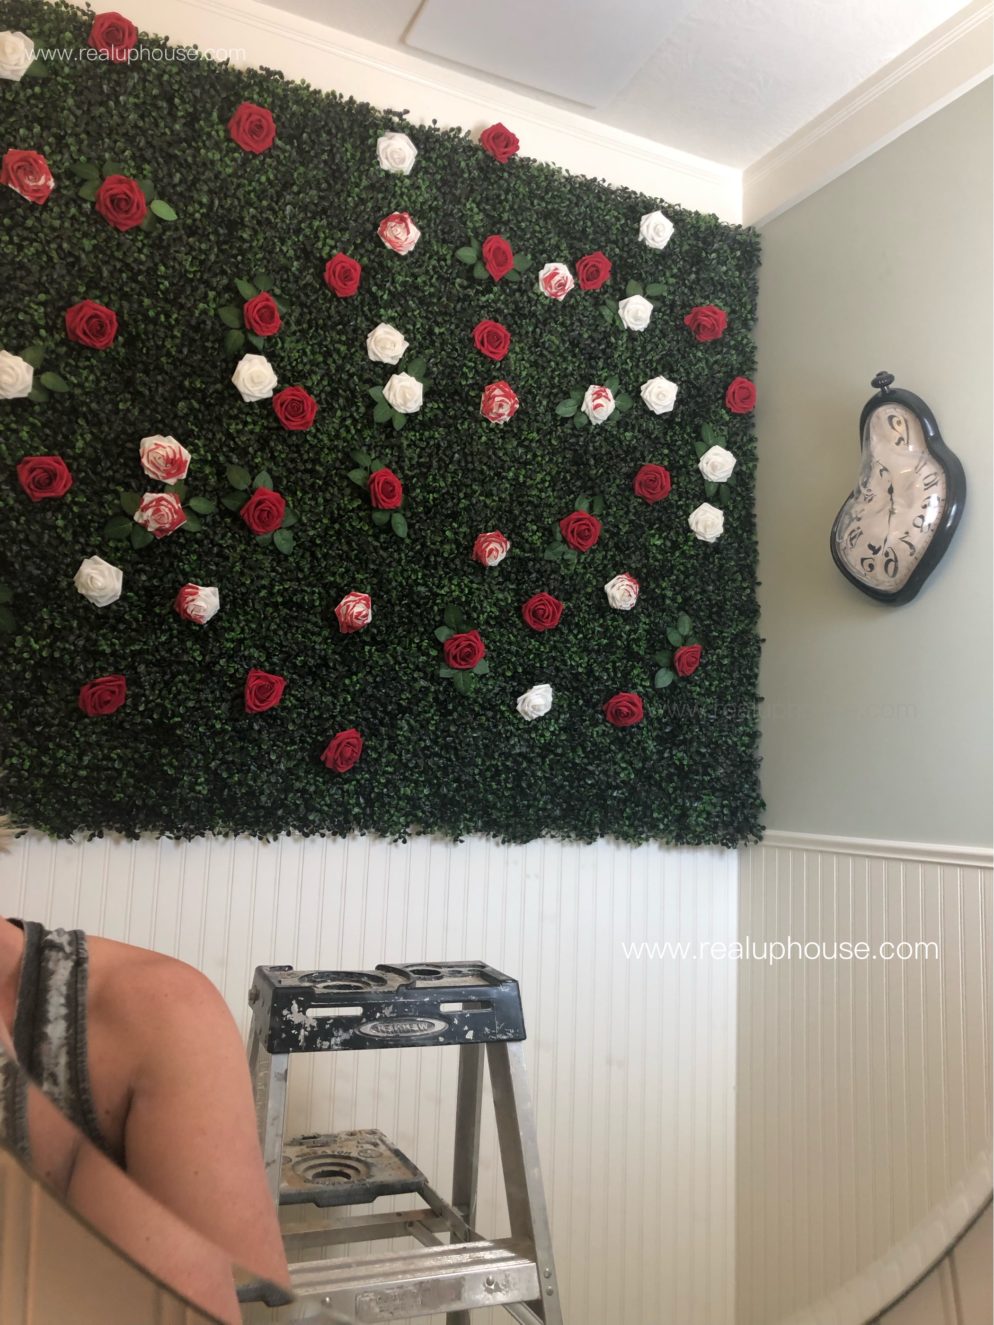 Roses wall display